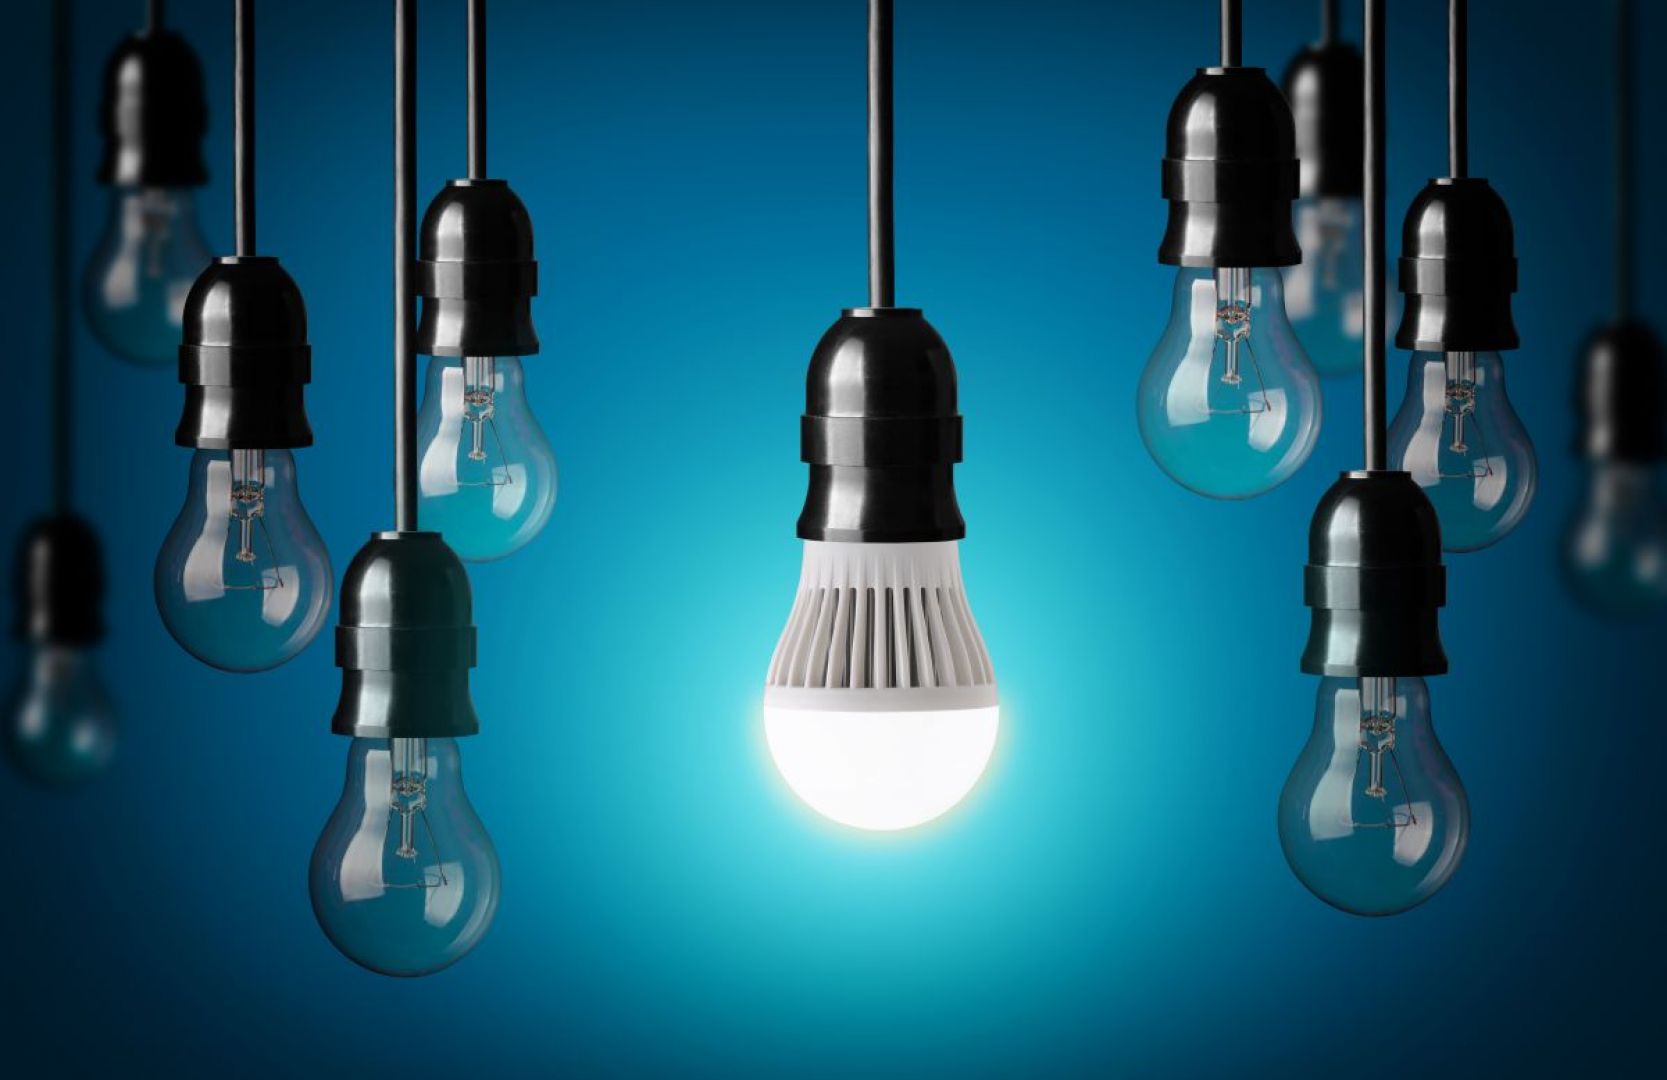 Jednym z najważniejszych argumentów stojących za źródłami światła LED jest ich długowieczność. Zgodnie z wytycznymi dyrektywy DIM2, trwałość lamp tego typu prezentuje się w liczbie godzin nieprzerwanego świecenia. Dobrej jakości urządzenia świecą nawet do 40.000 godzin (około 20 lat pracy przez 6 godzin dziennie). Fot. Shutterstock